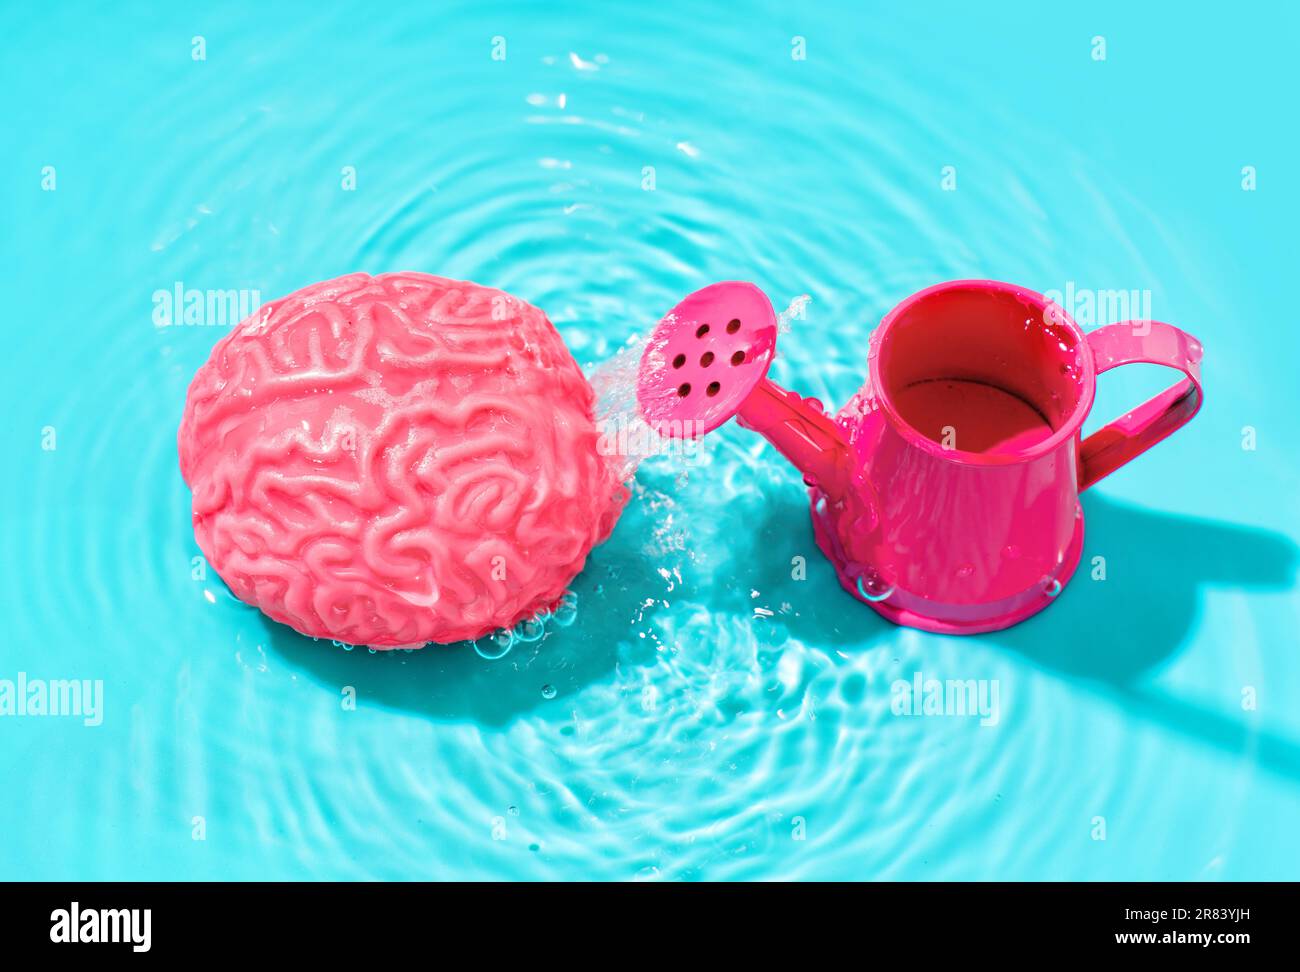 Ein Spielzeugmodell des menschlichen Gehirns und eine pinkfarbene Miniatur-Gießkanne können in einen Wasserpool vor blauer Kulisse eingetaucht werden, was die Förderung von Ideen A symbolisiert Stockfoto